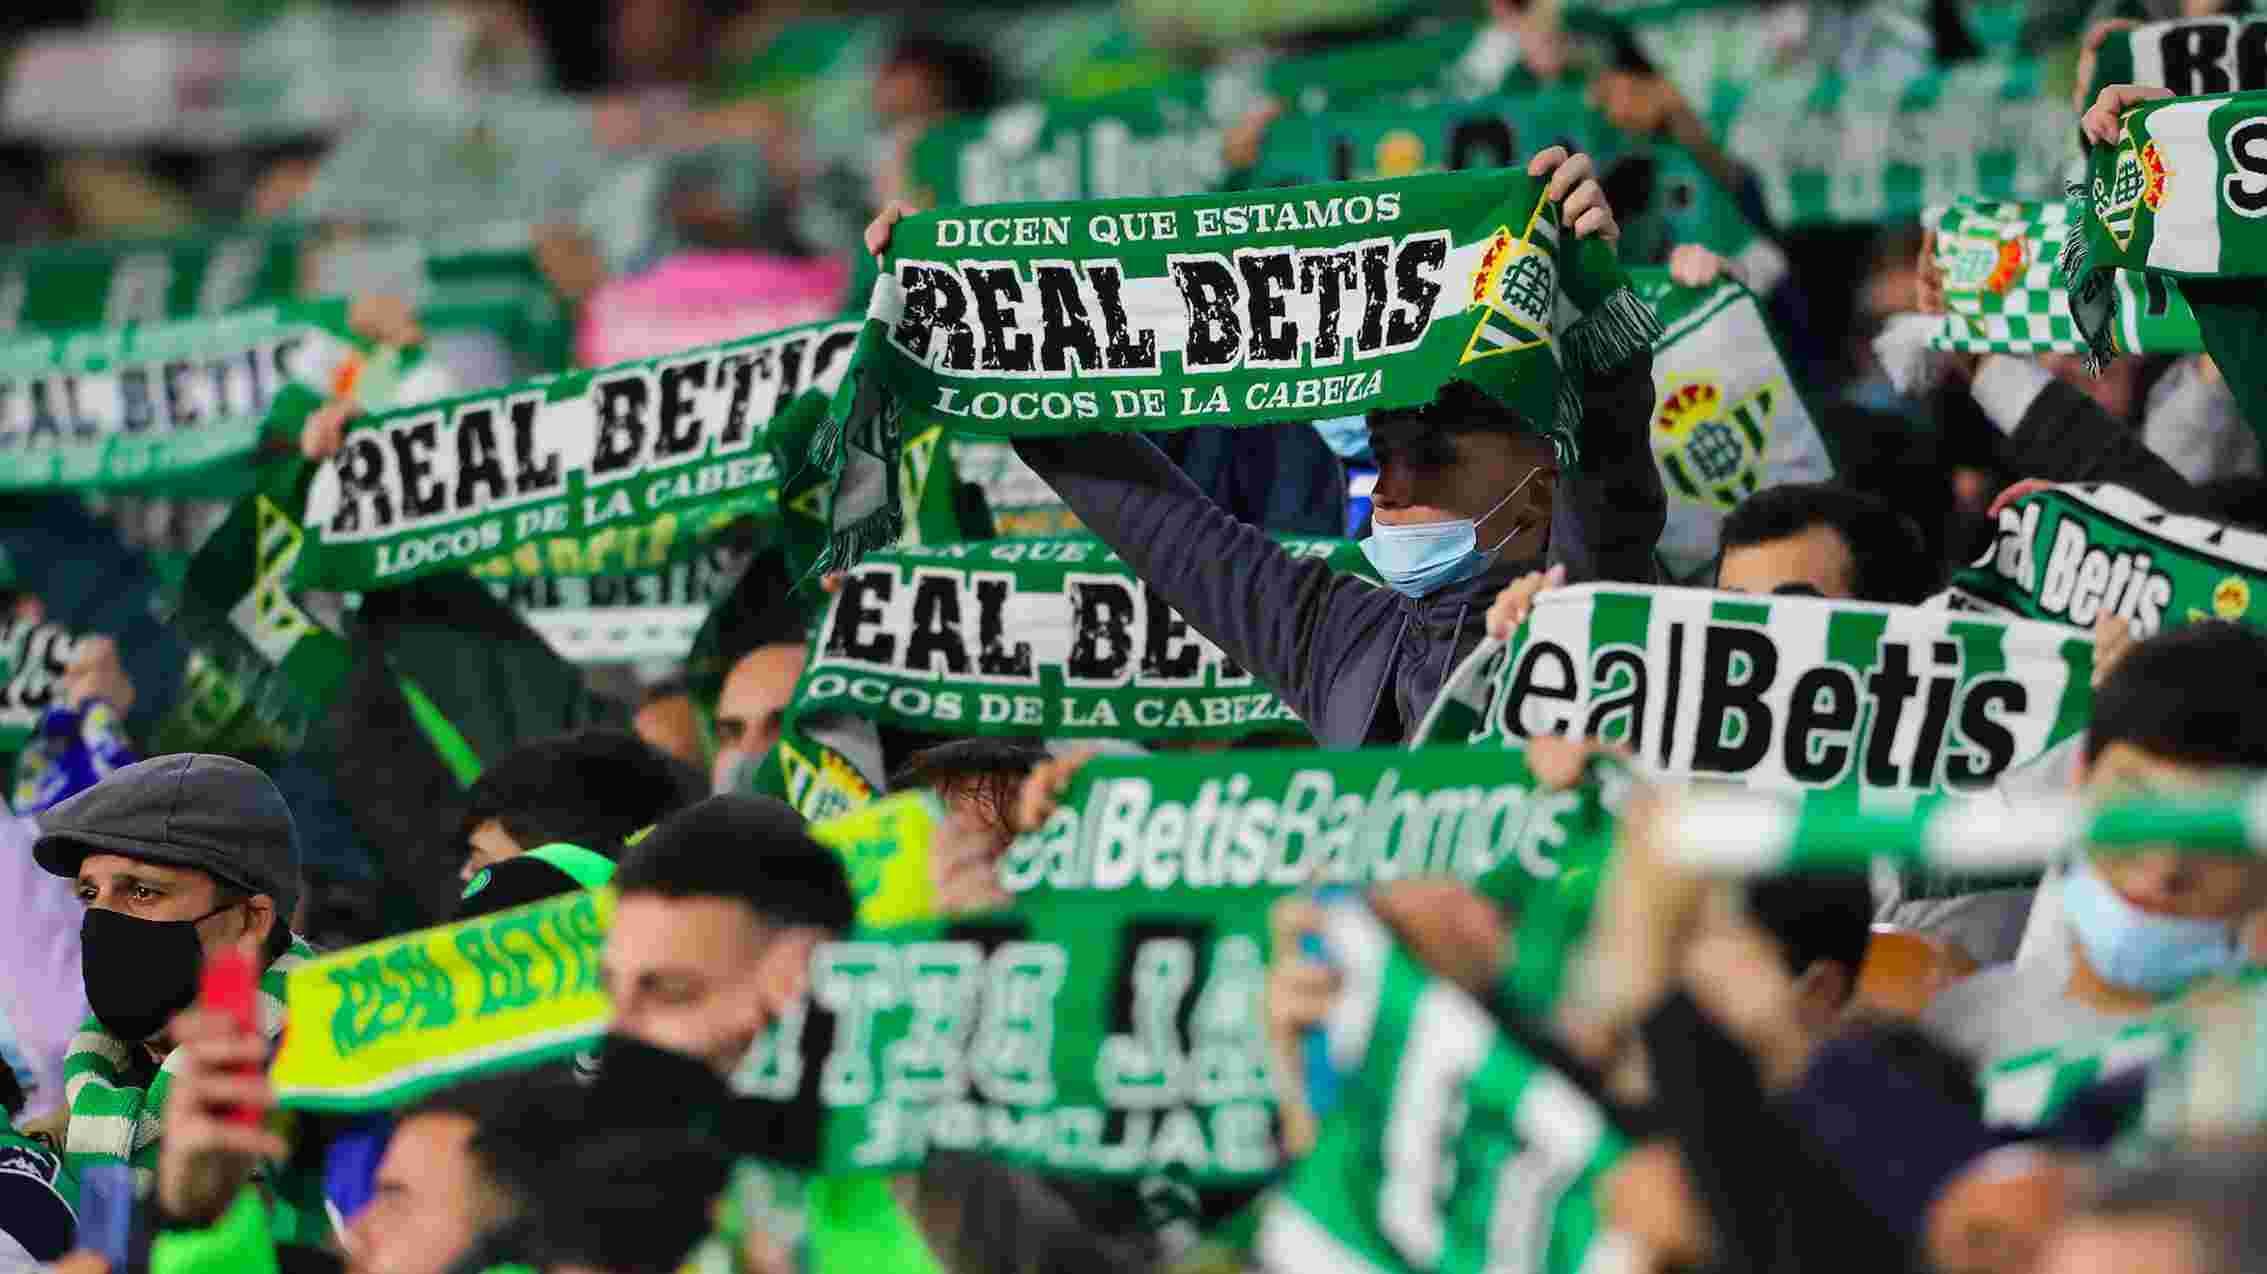 La afición del Betis no podrá asistir al partido contra la Real Sociedad